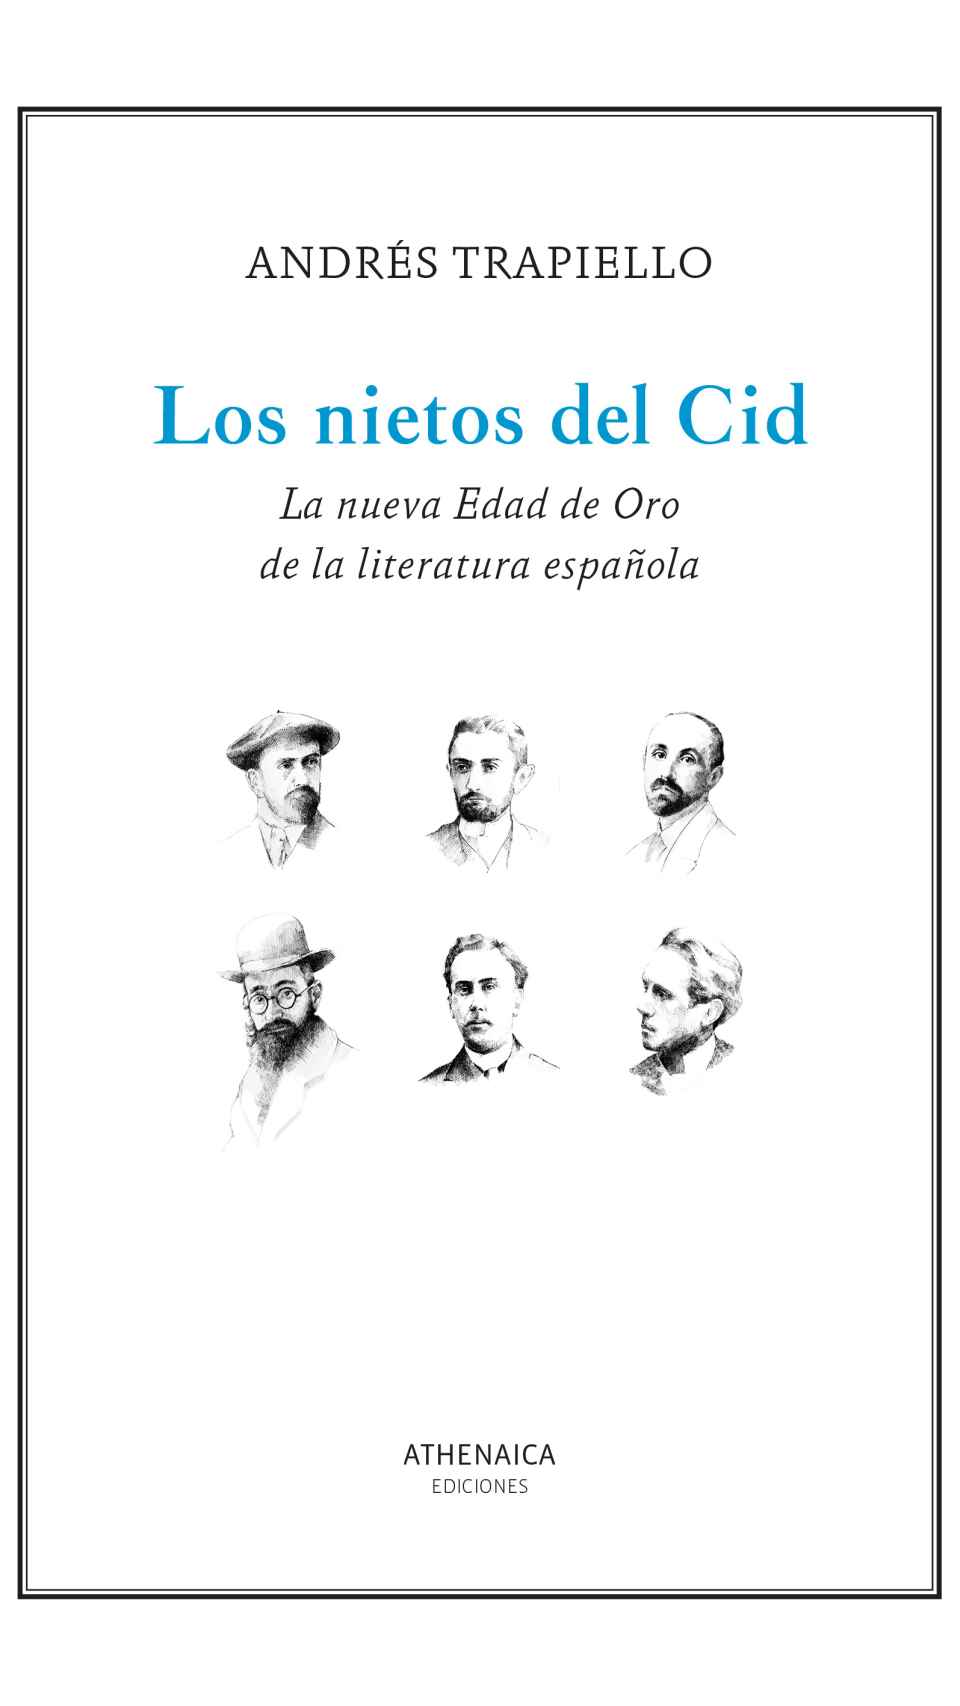 'Los nietos del Cid'